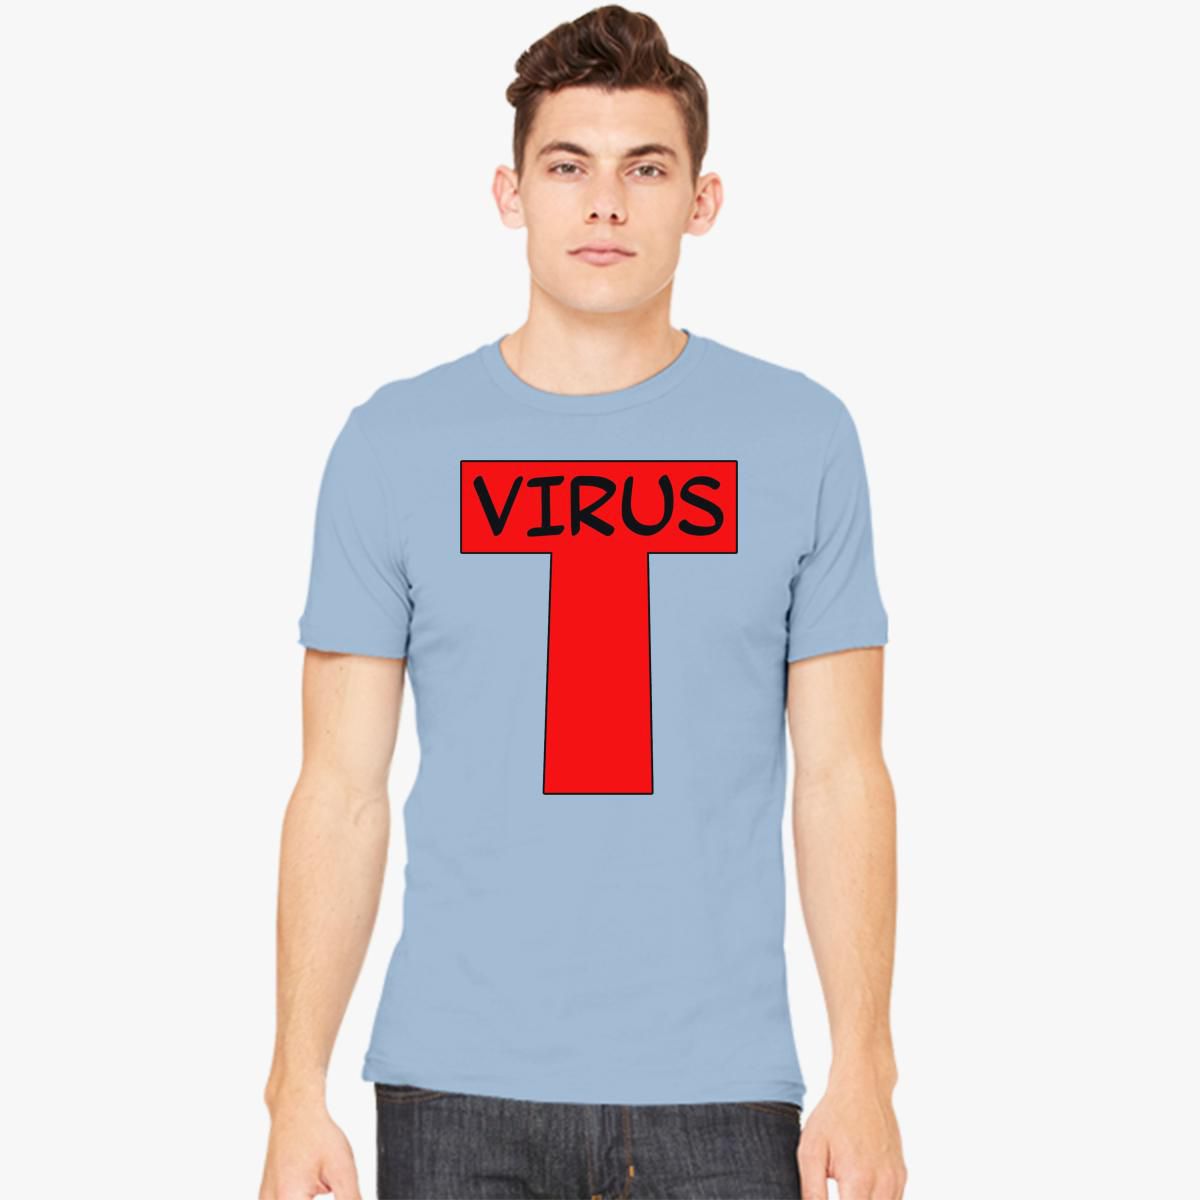 Det er billigt Bugsering forælder Gorillaz T VIRUS Shirt Men's T-shirt - Customon